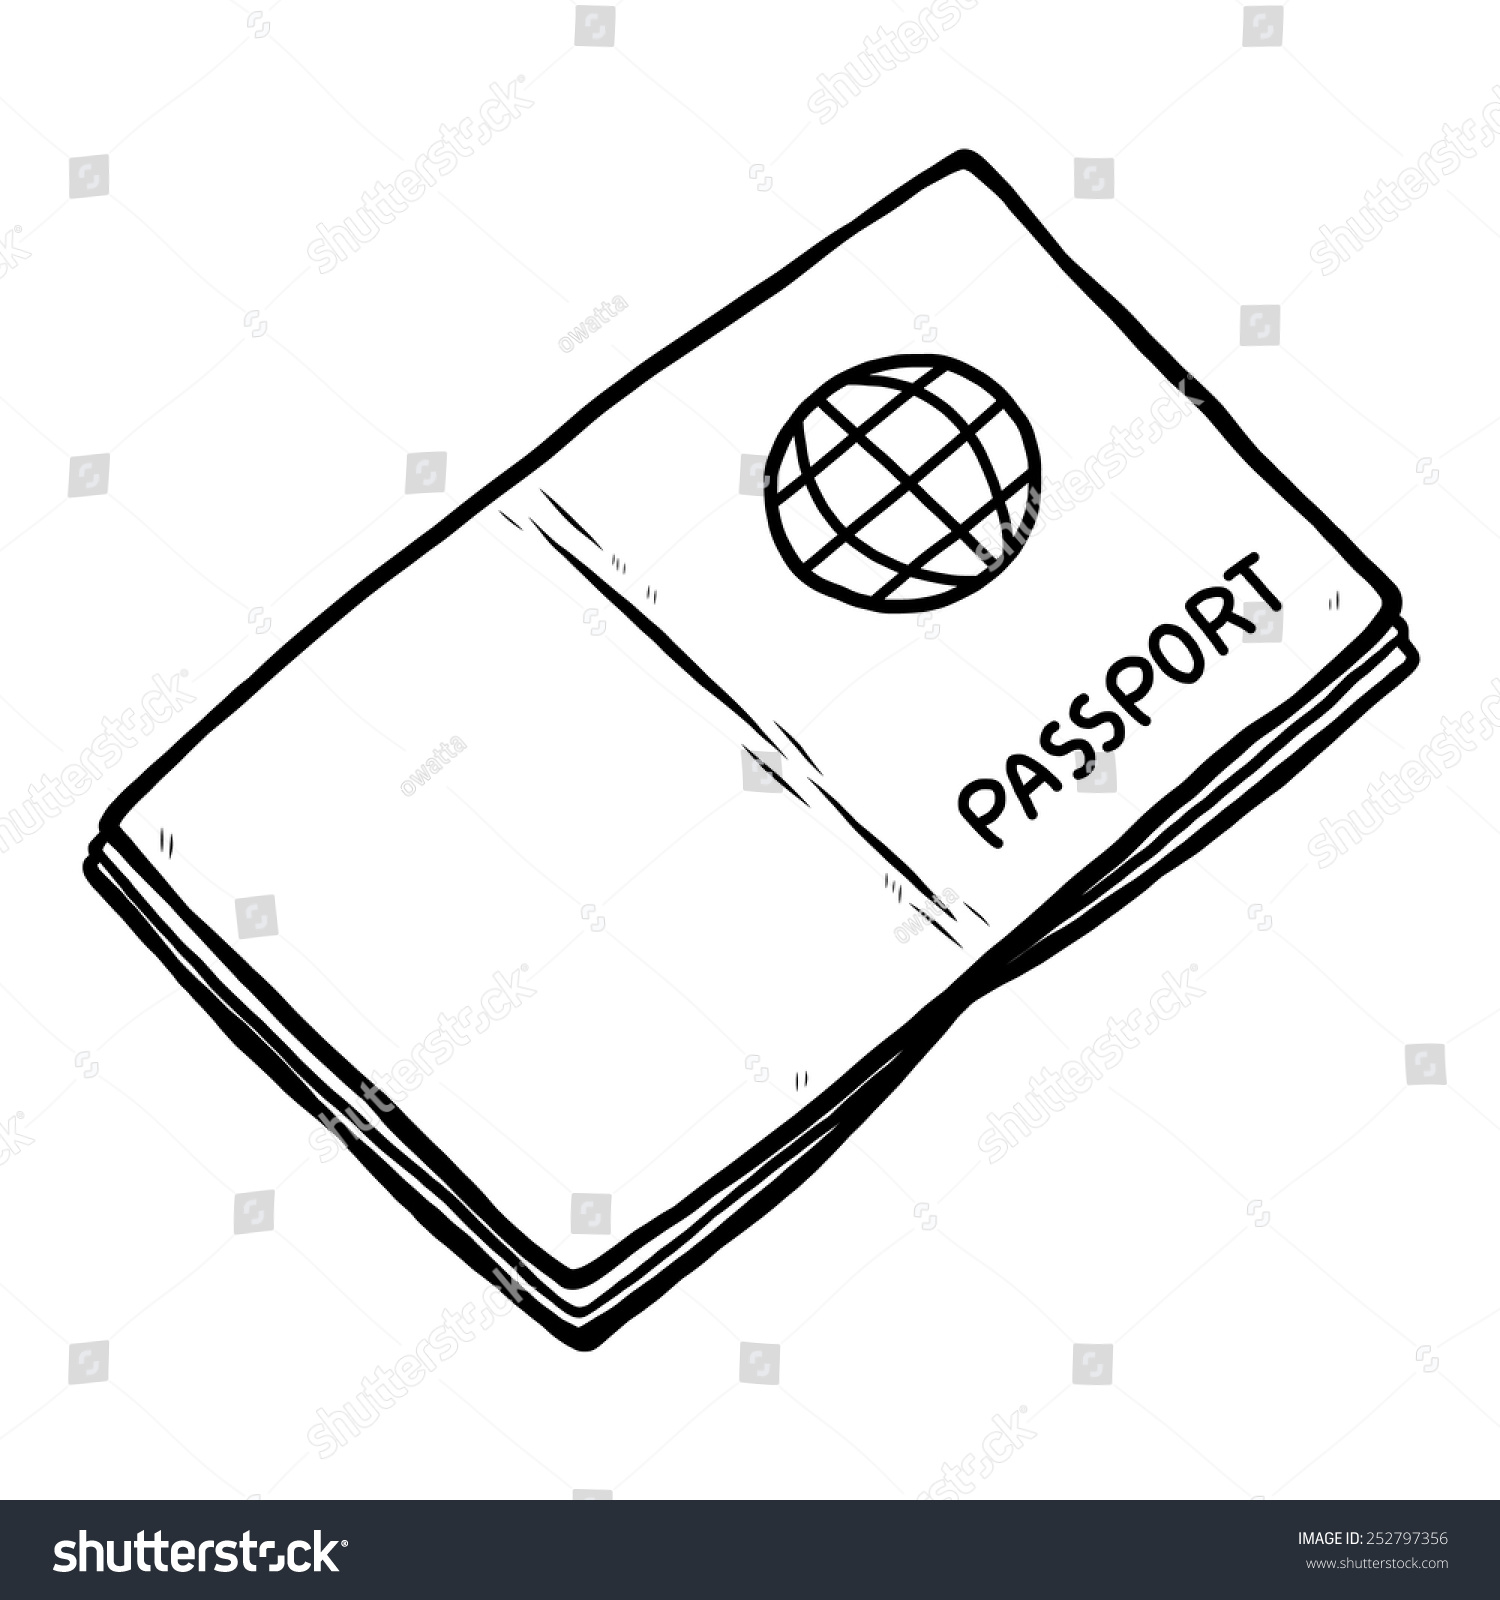 Раскраска паспорт